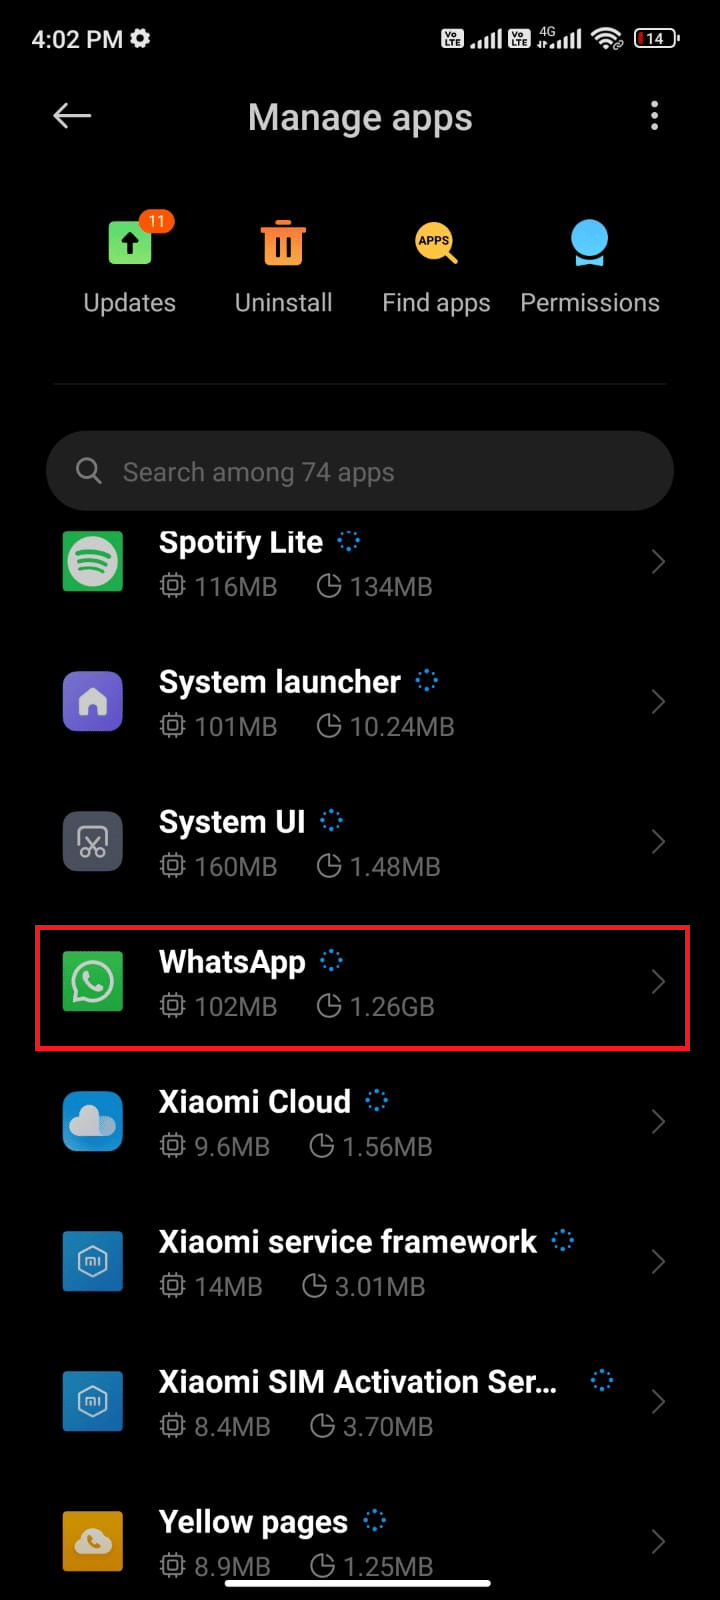 toque Administrar aplicaciones seguido de WhatsApp